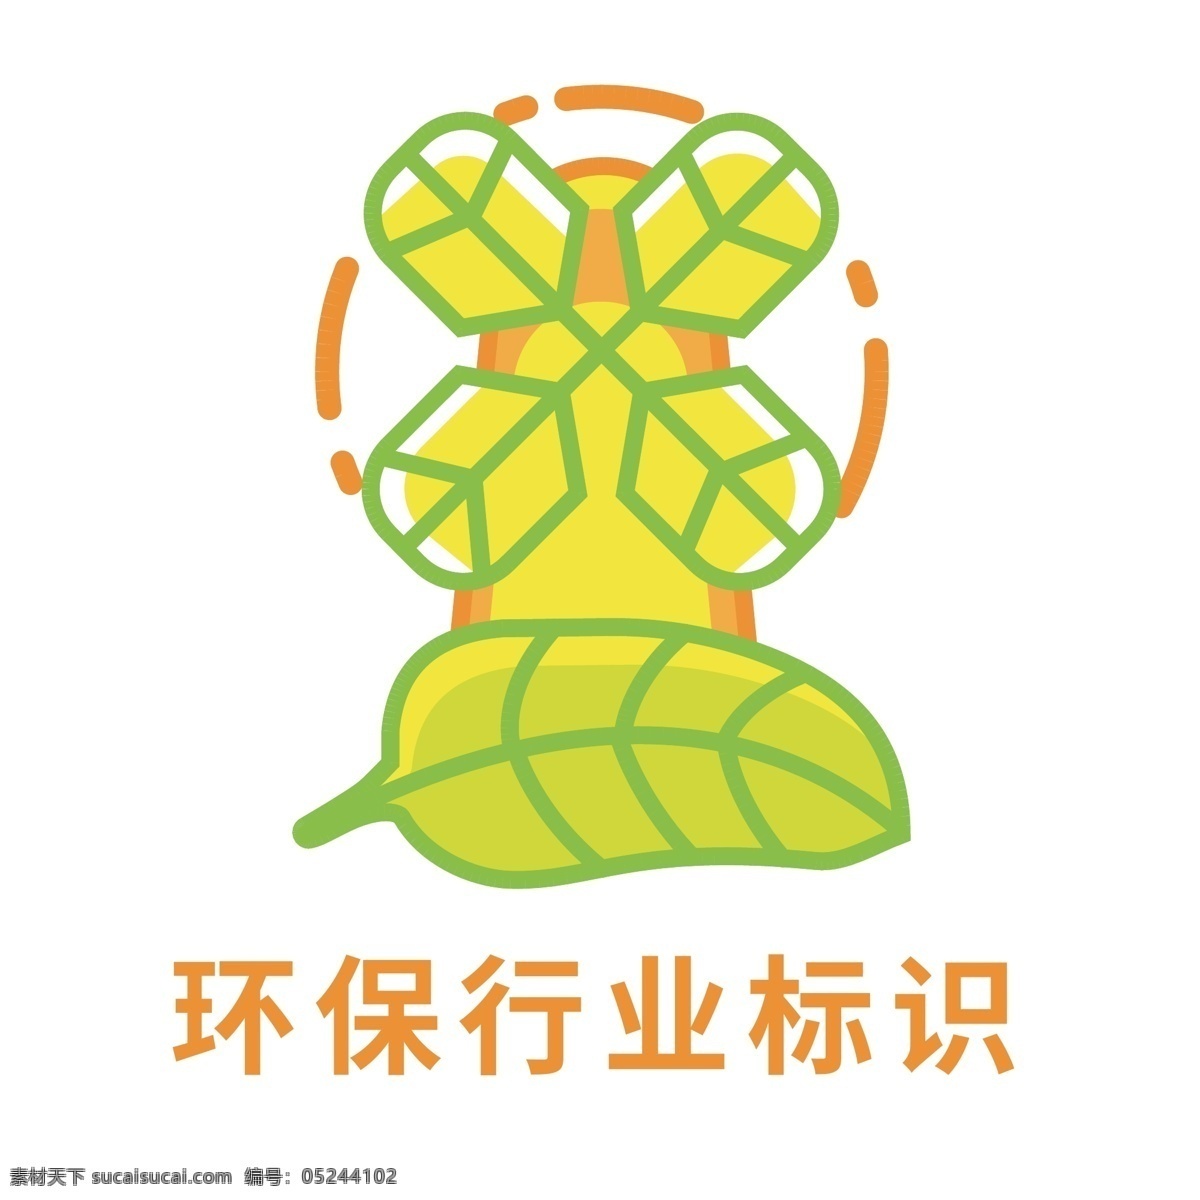 环保 企业 标识 logo 环保logo 环保标识 企业logo 环保企业 绿色logo 卡通logo